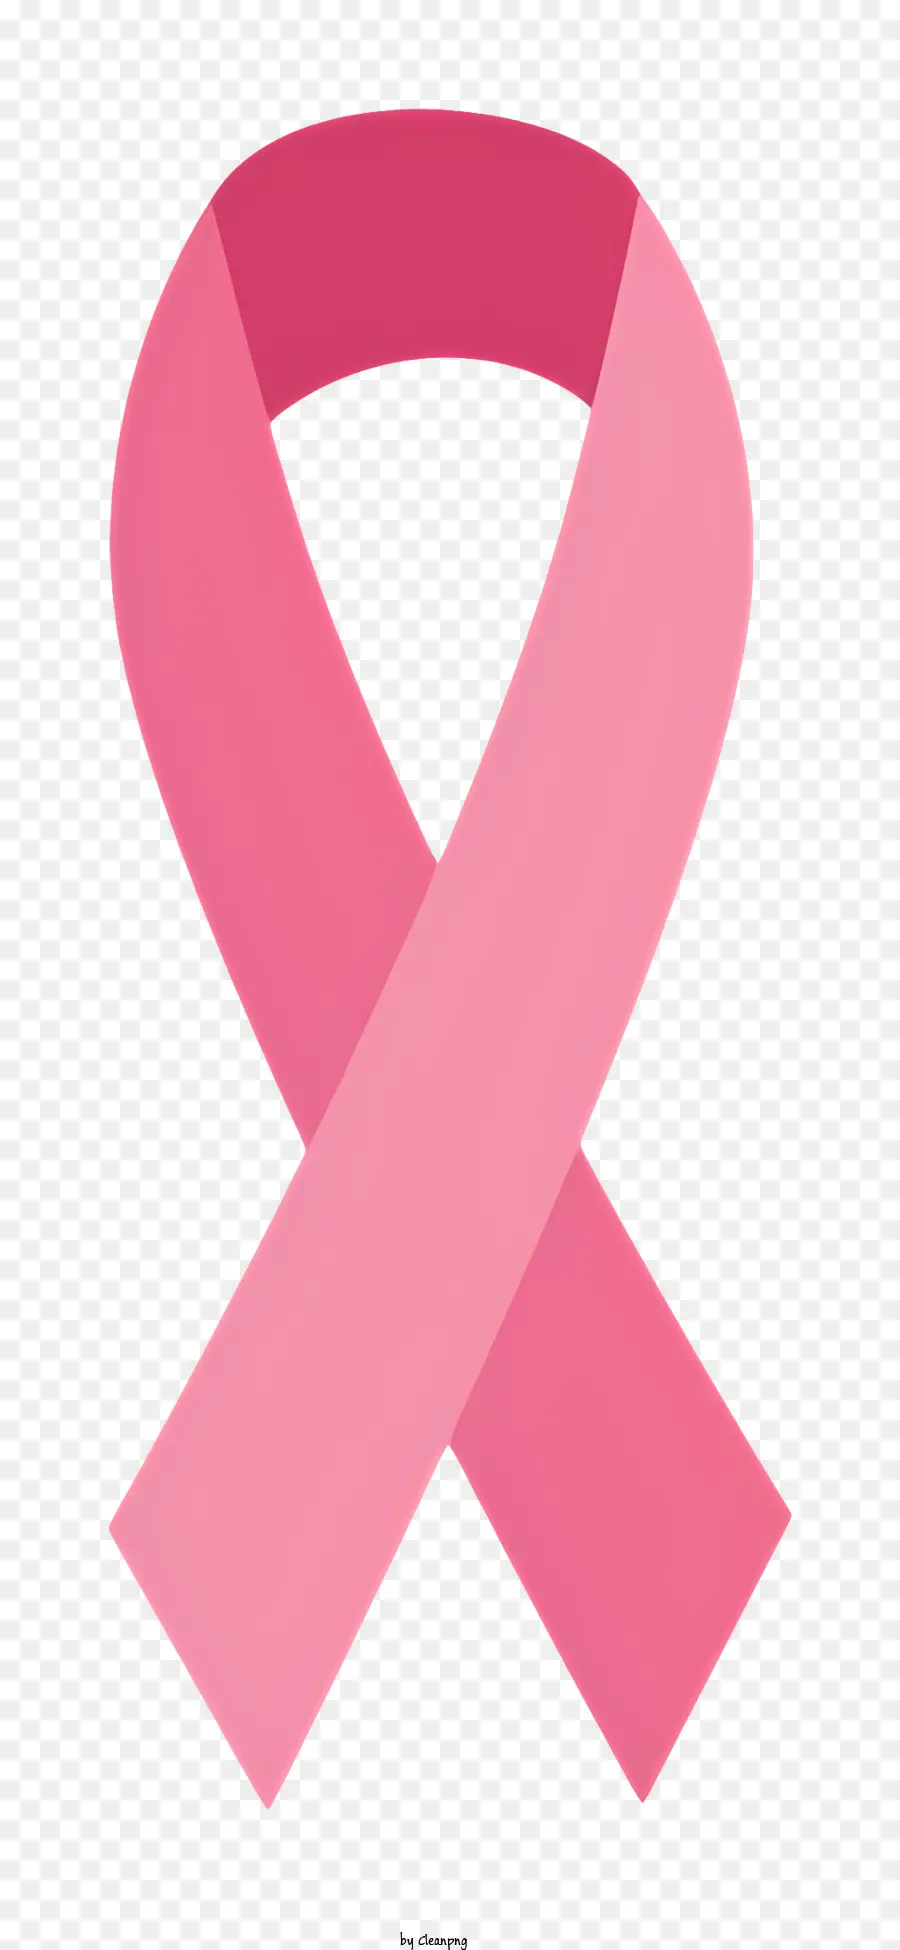 Pink Ribbon - Flaches rosa Band auf schwarzem Hintergrund, keine Details